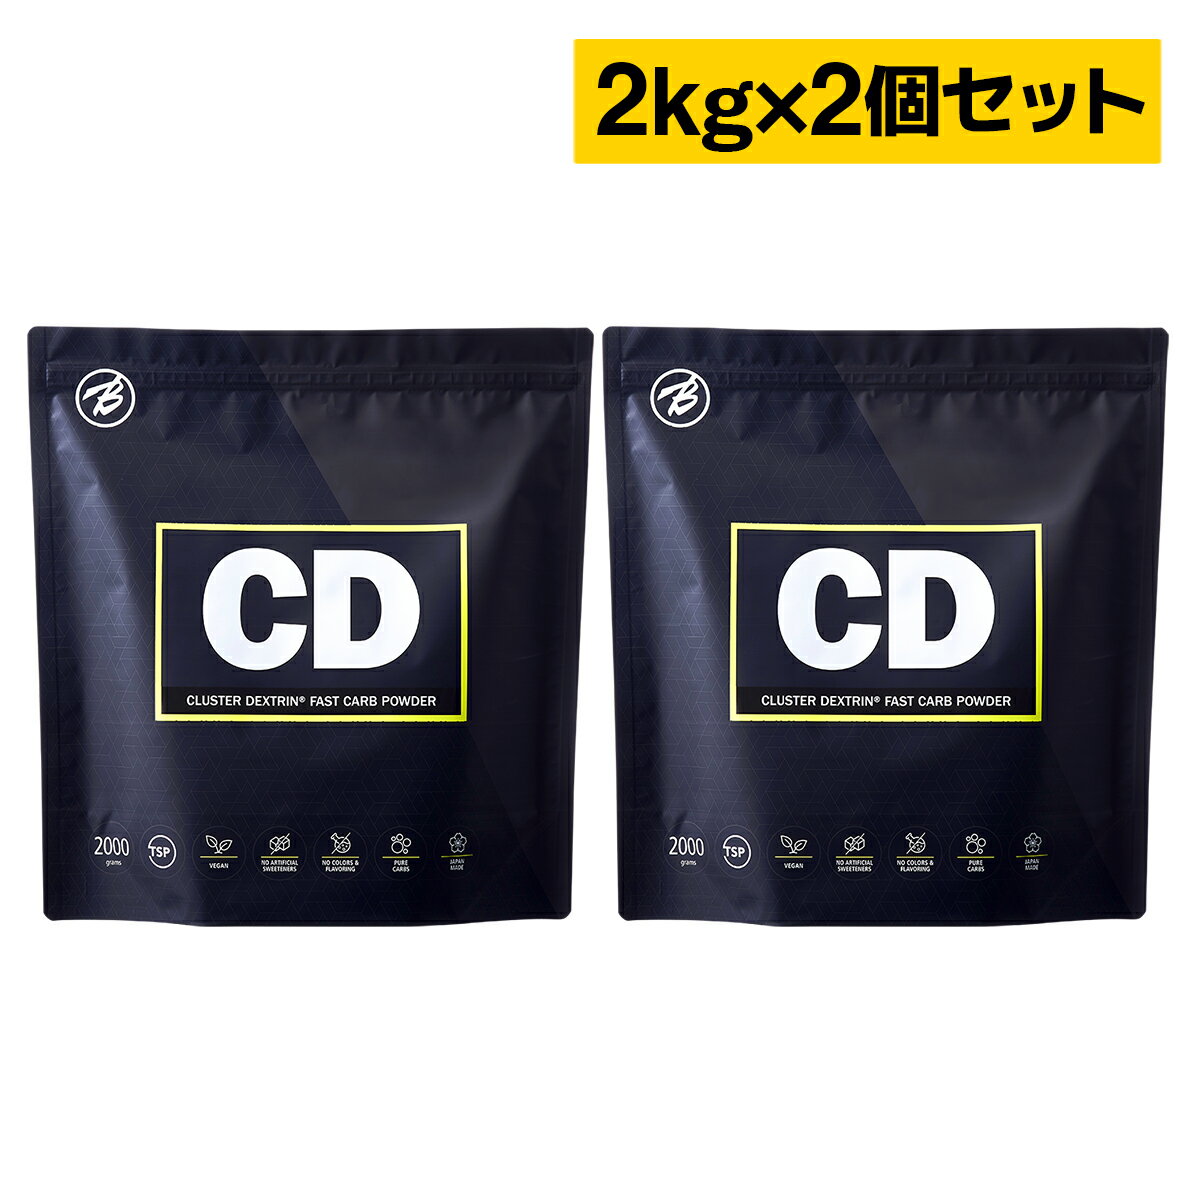 【バルクスポーツ】CD クラスターデキストリン国産 2kg お得な2個セット 約180食分 福袋 ギフト